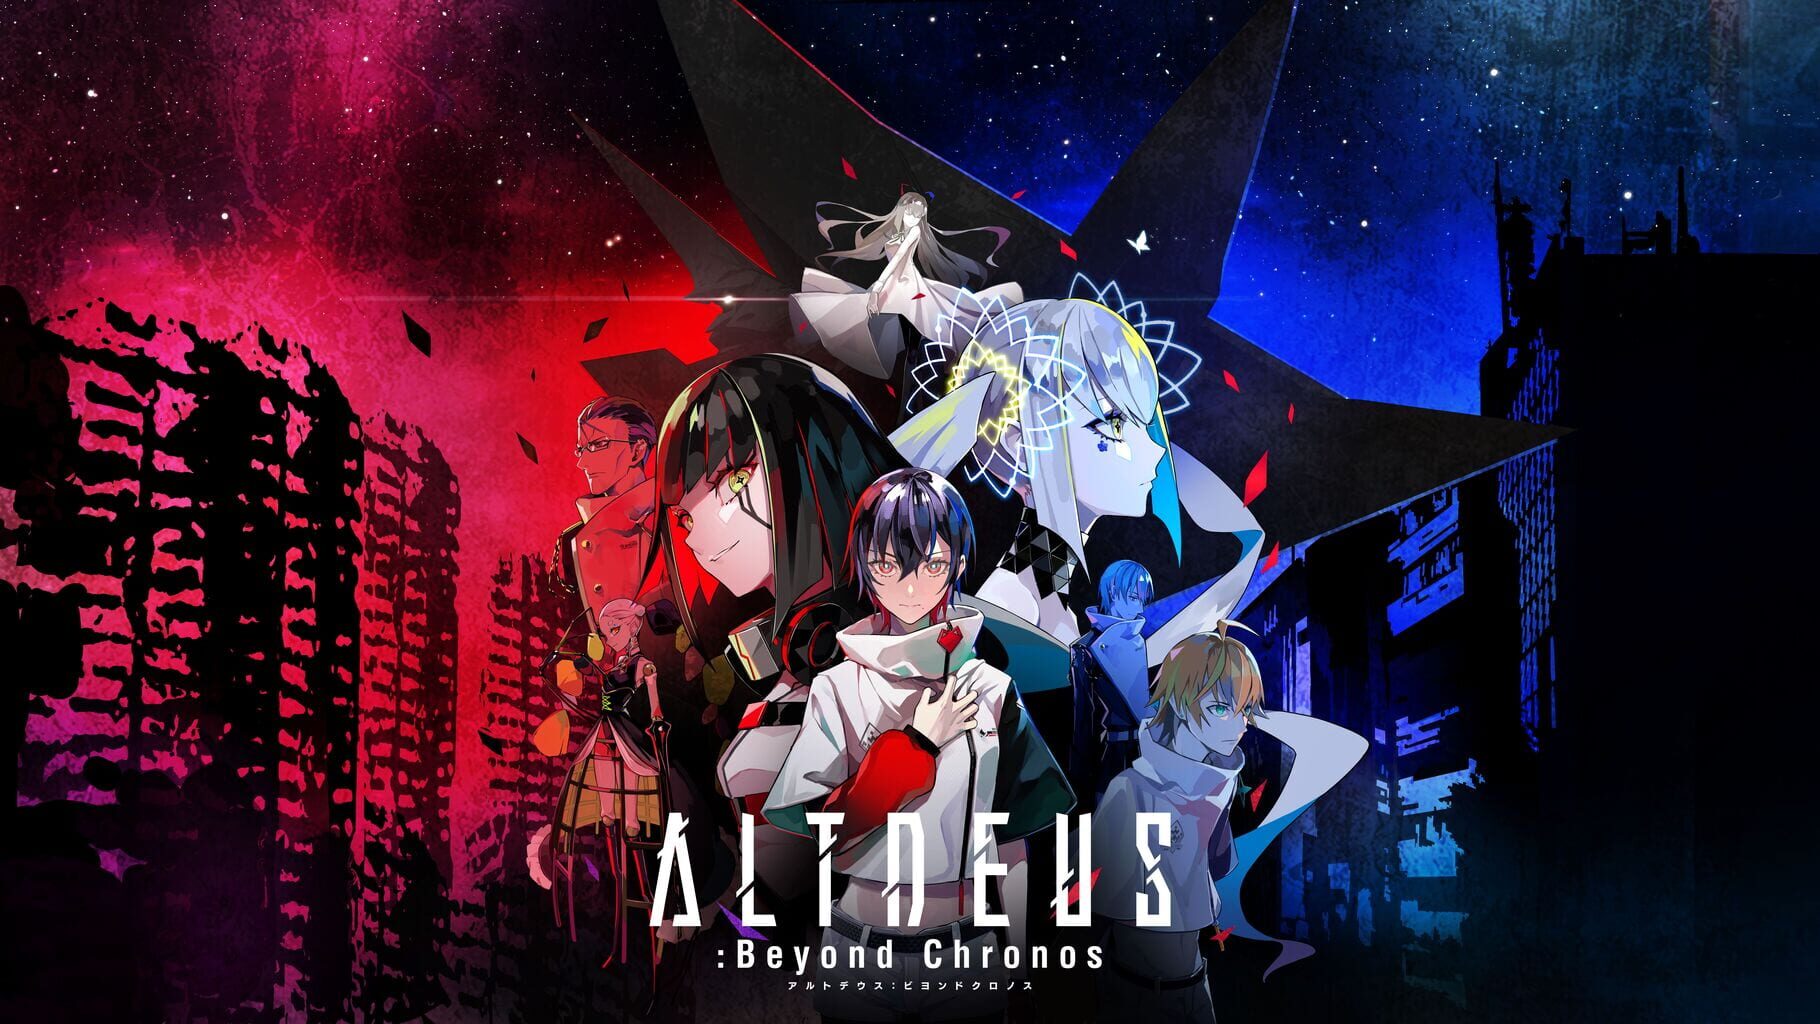 Arte - Altdeus: Beyond Chronos